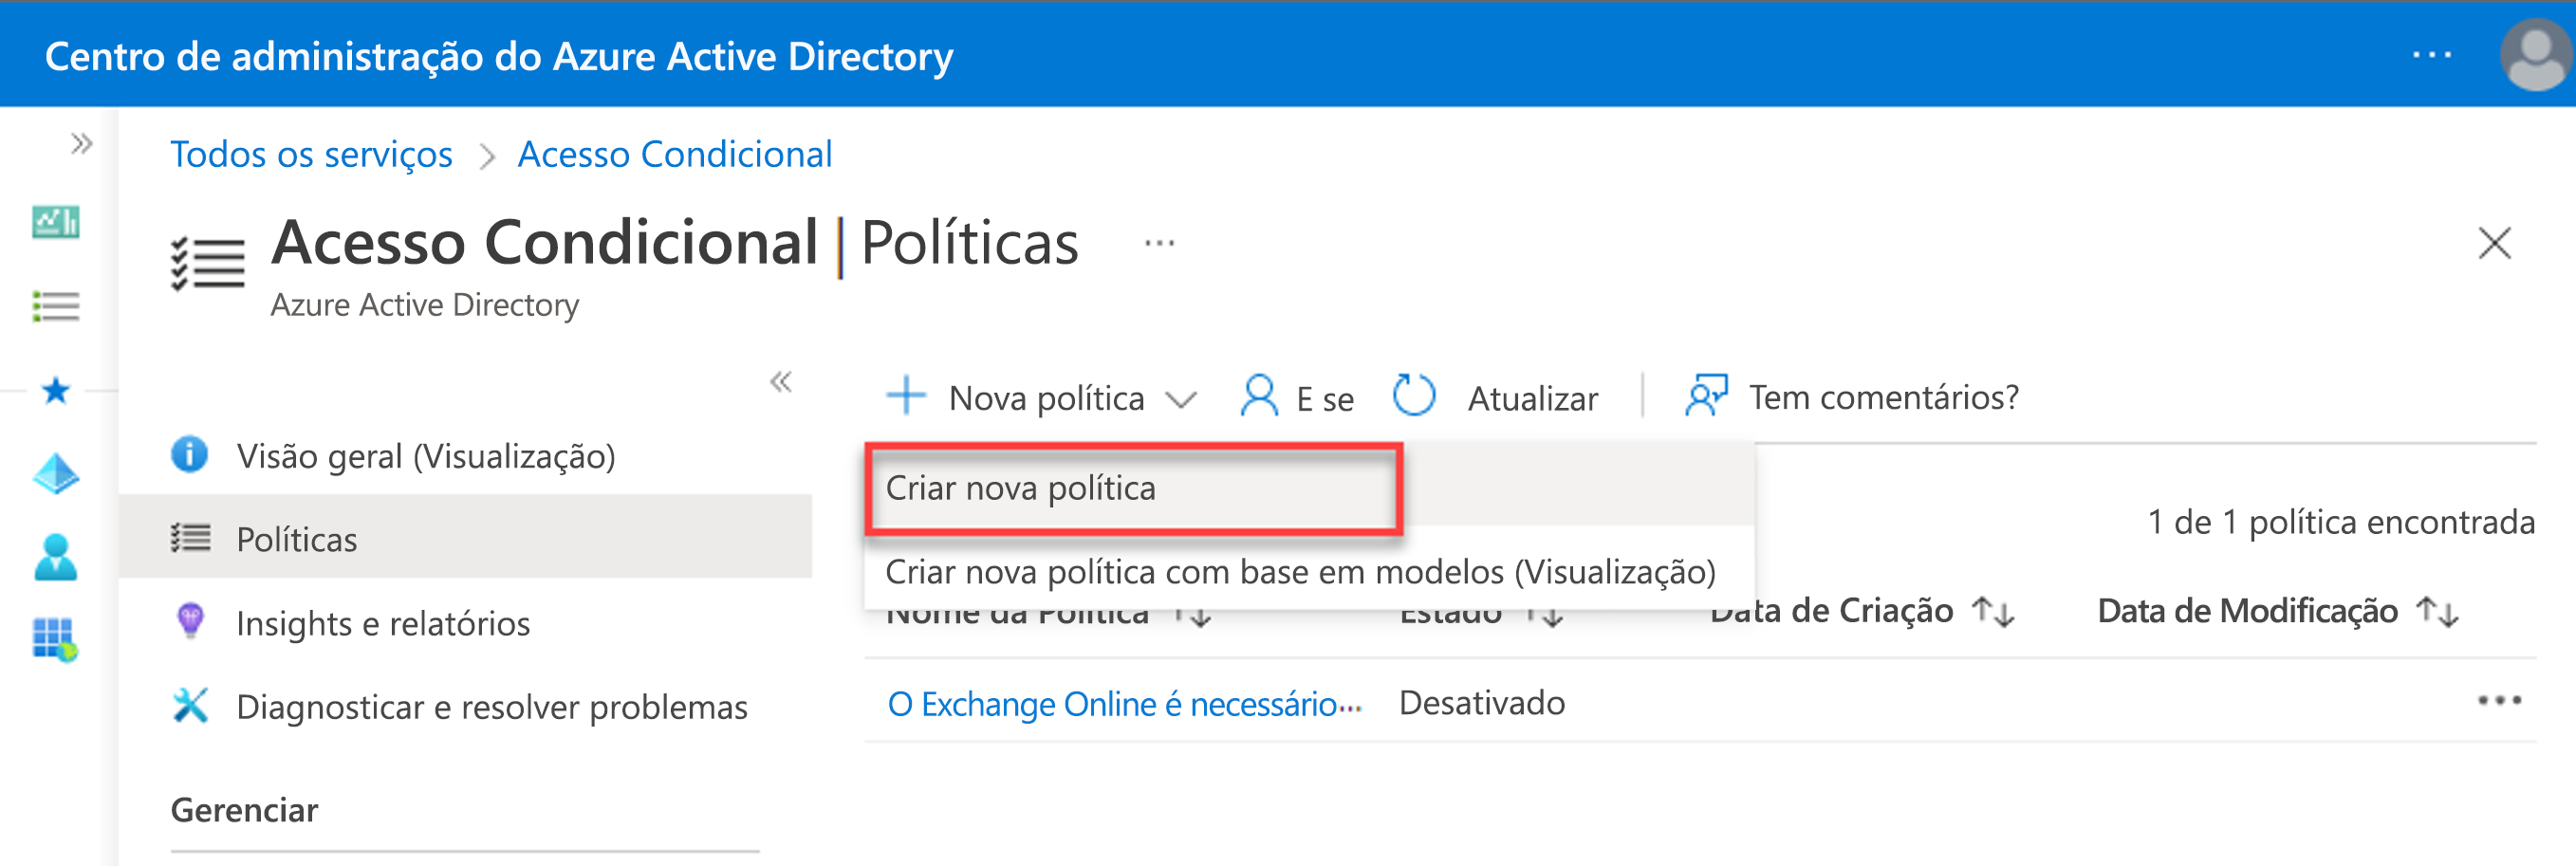 Captura de tela da criação de uma nova política de Acesso Condicional do centro de administração do Azure Active Directory